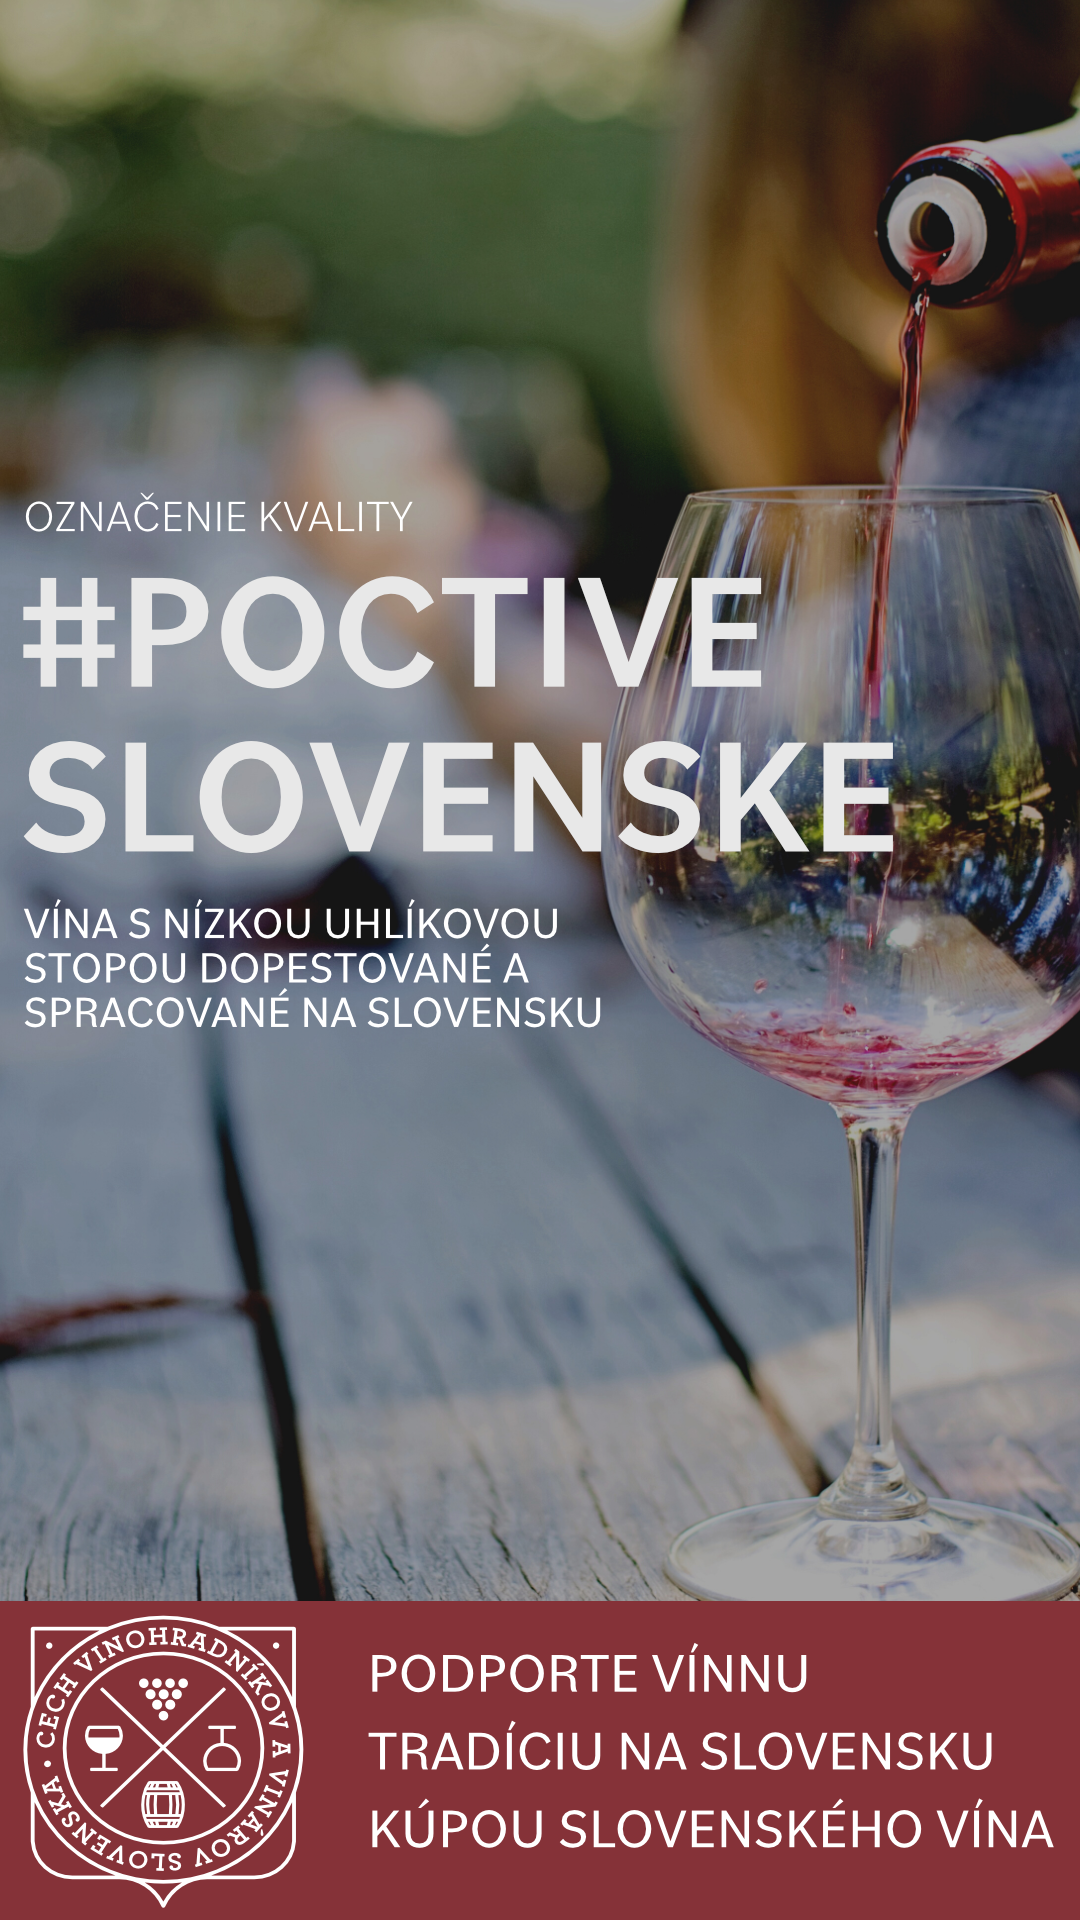 Sme zakladajúcim členom cechu vinohradníkov a vinárov Slovenska.